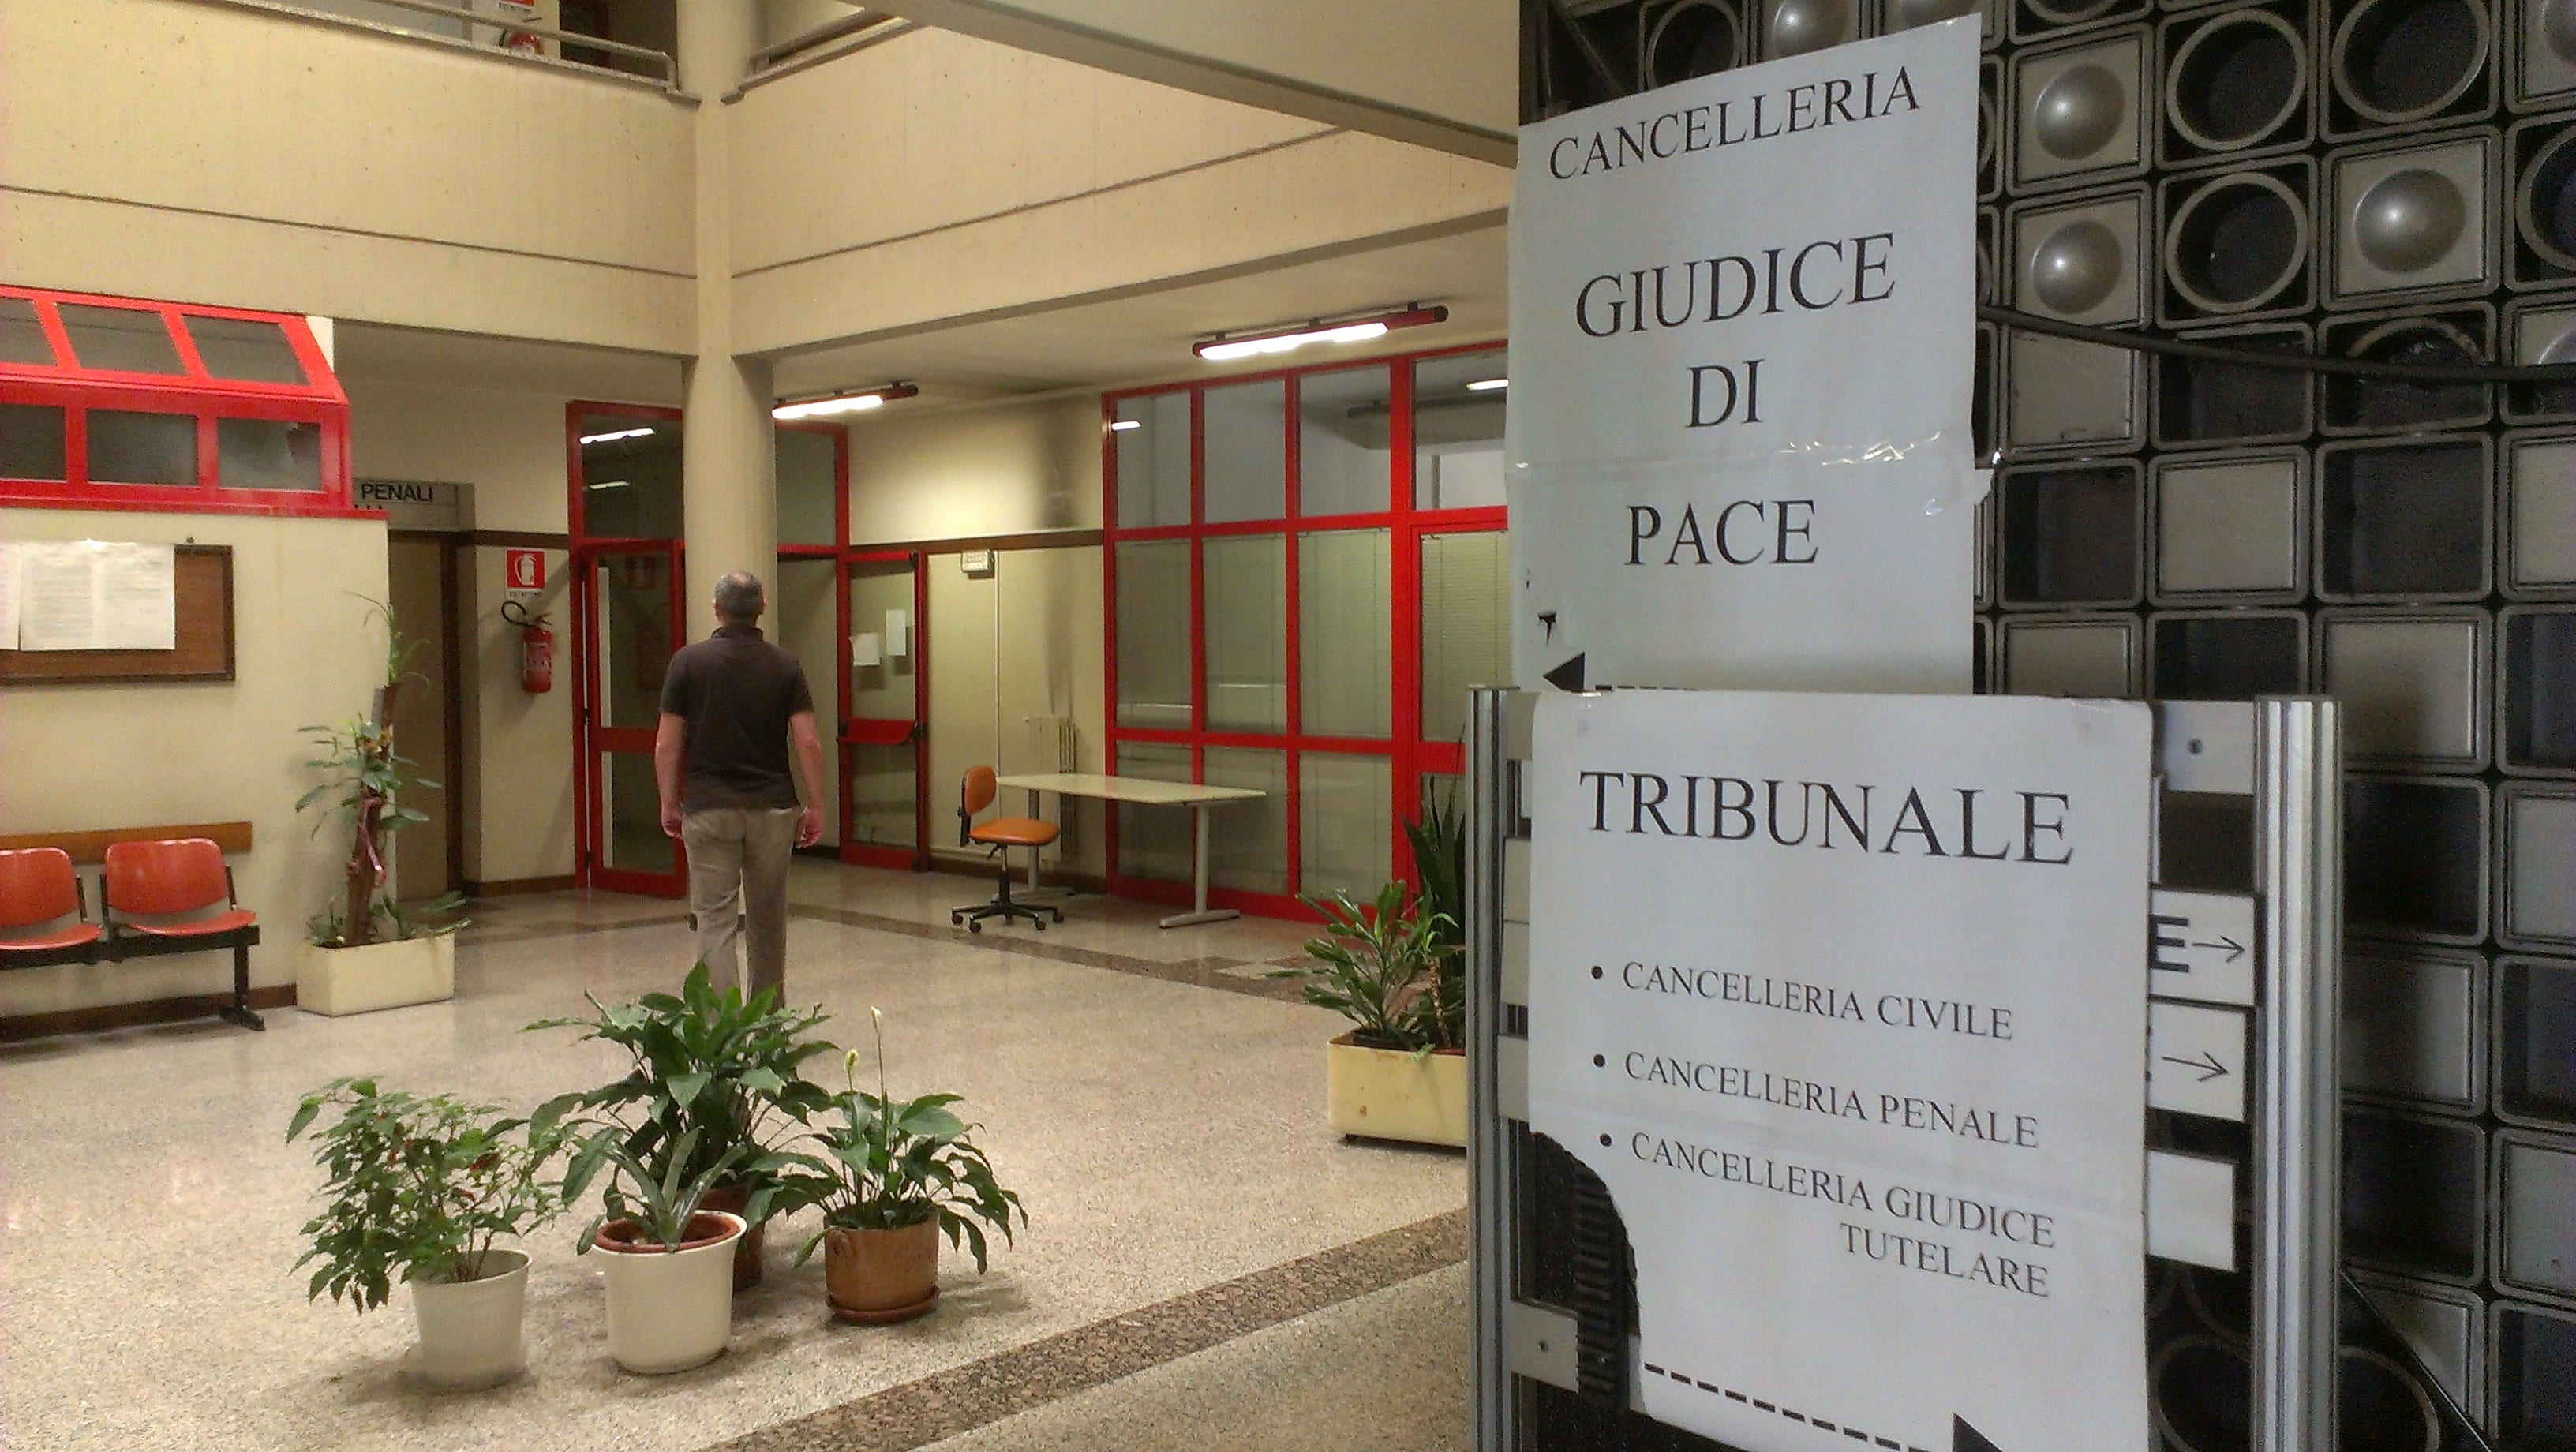 Palazzo insicuro: cancelleria giudice di pace trasferita a Legnano